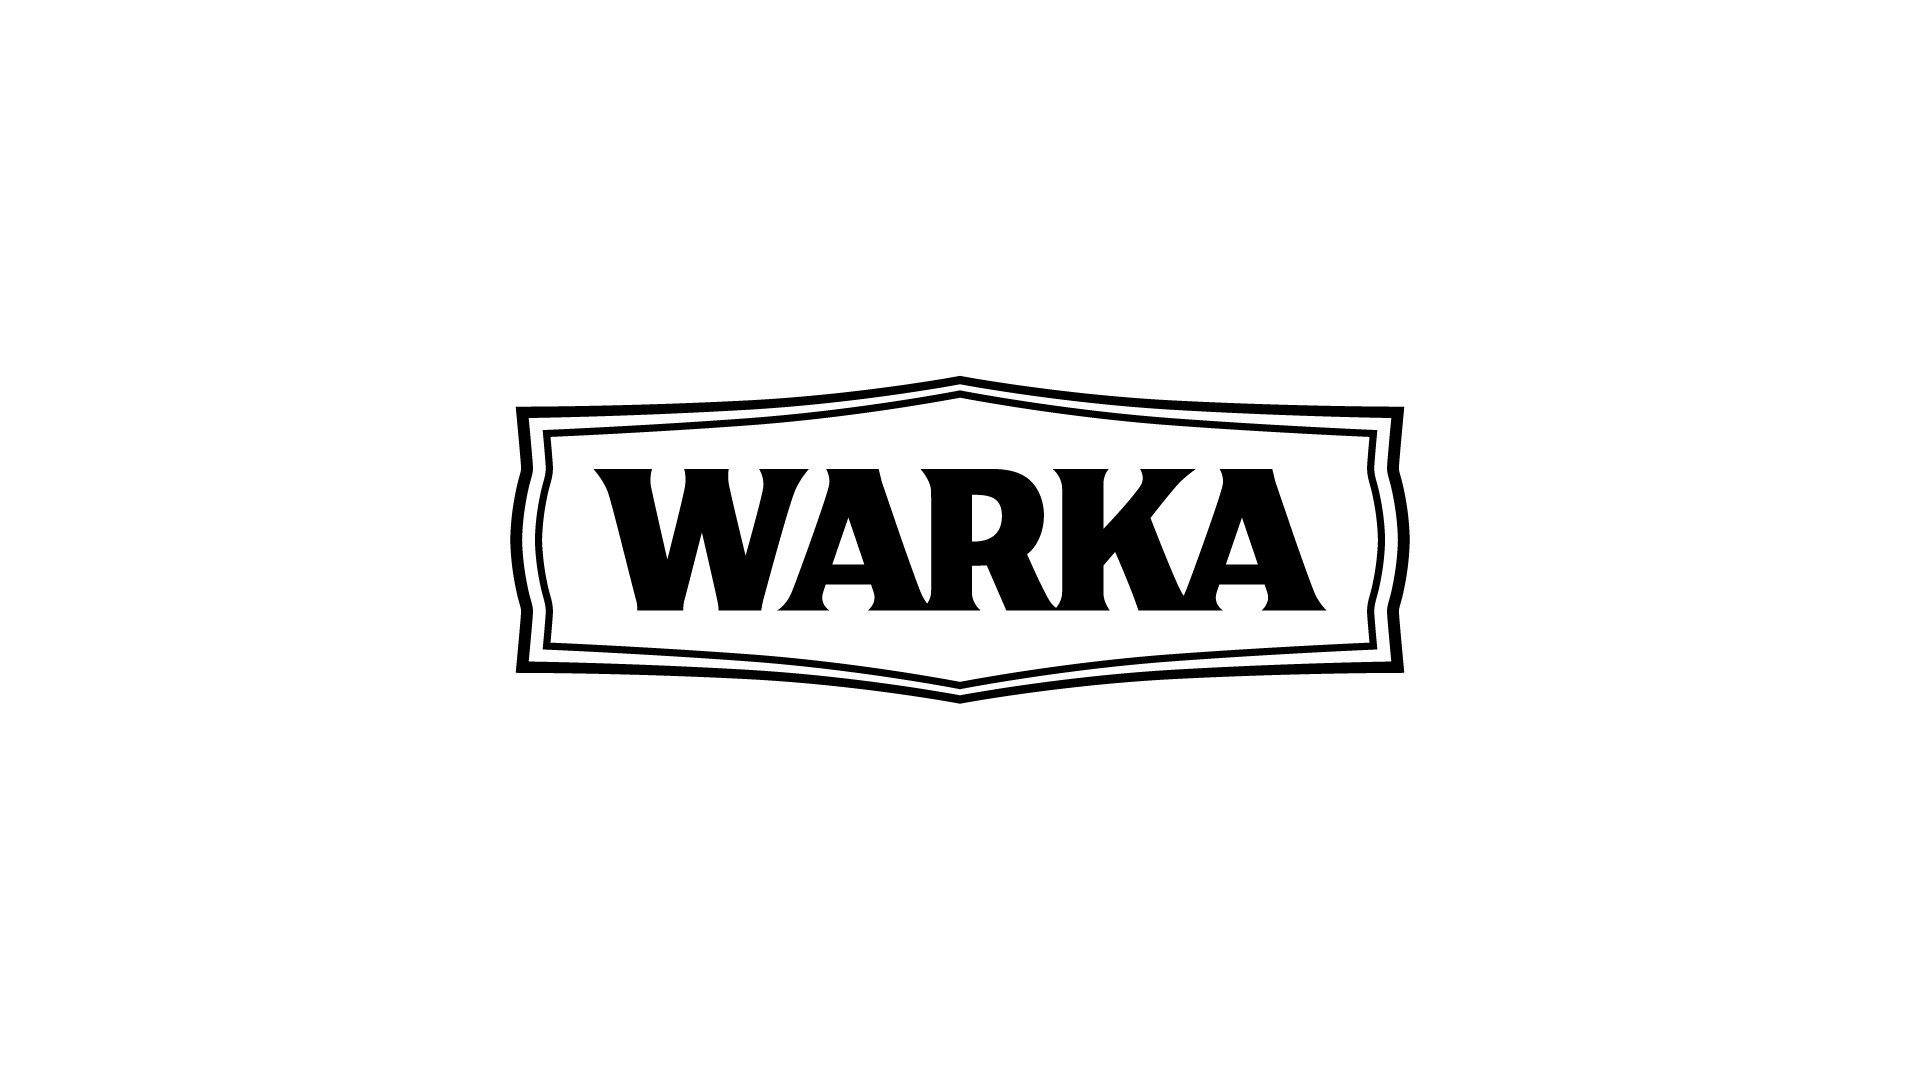 Warka logo